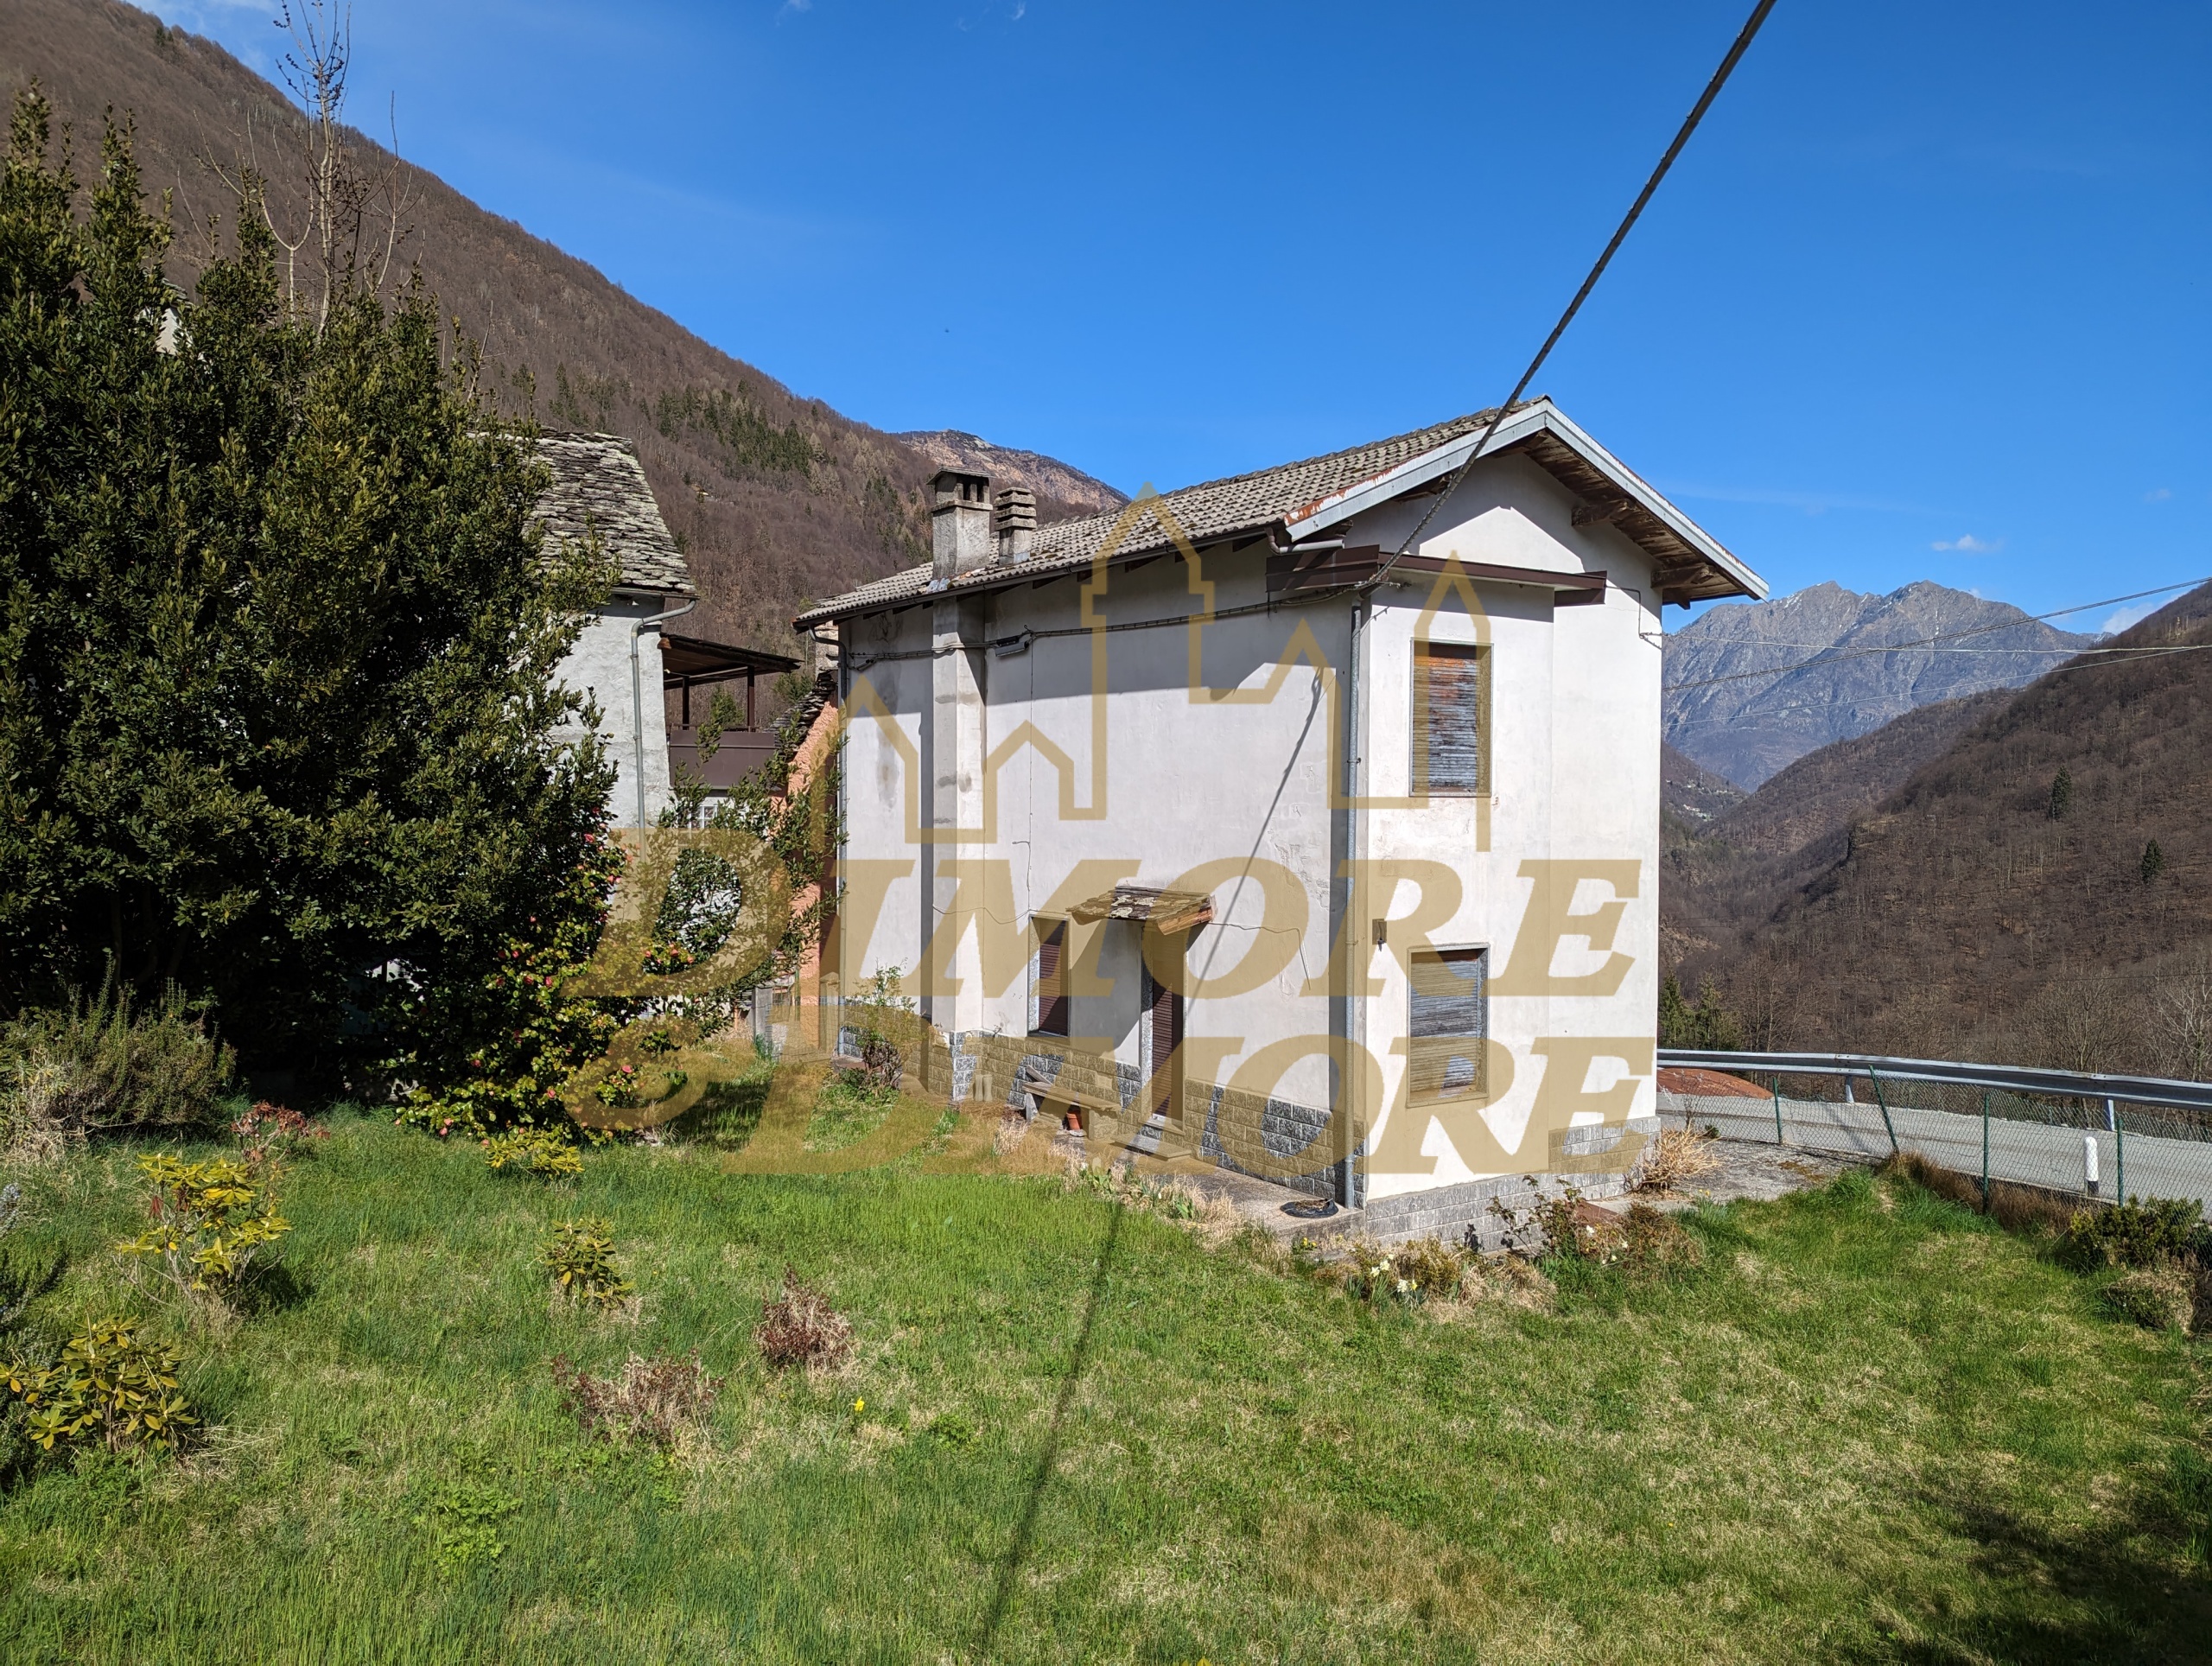 Casa indipendente con giardino in vigino, Calasca-Castiglione